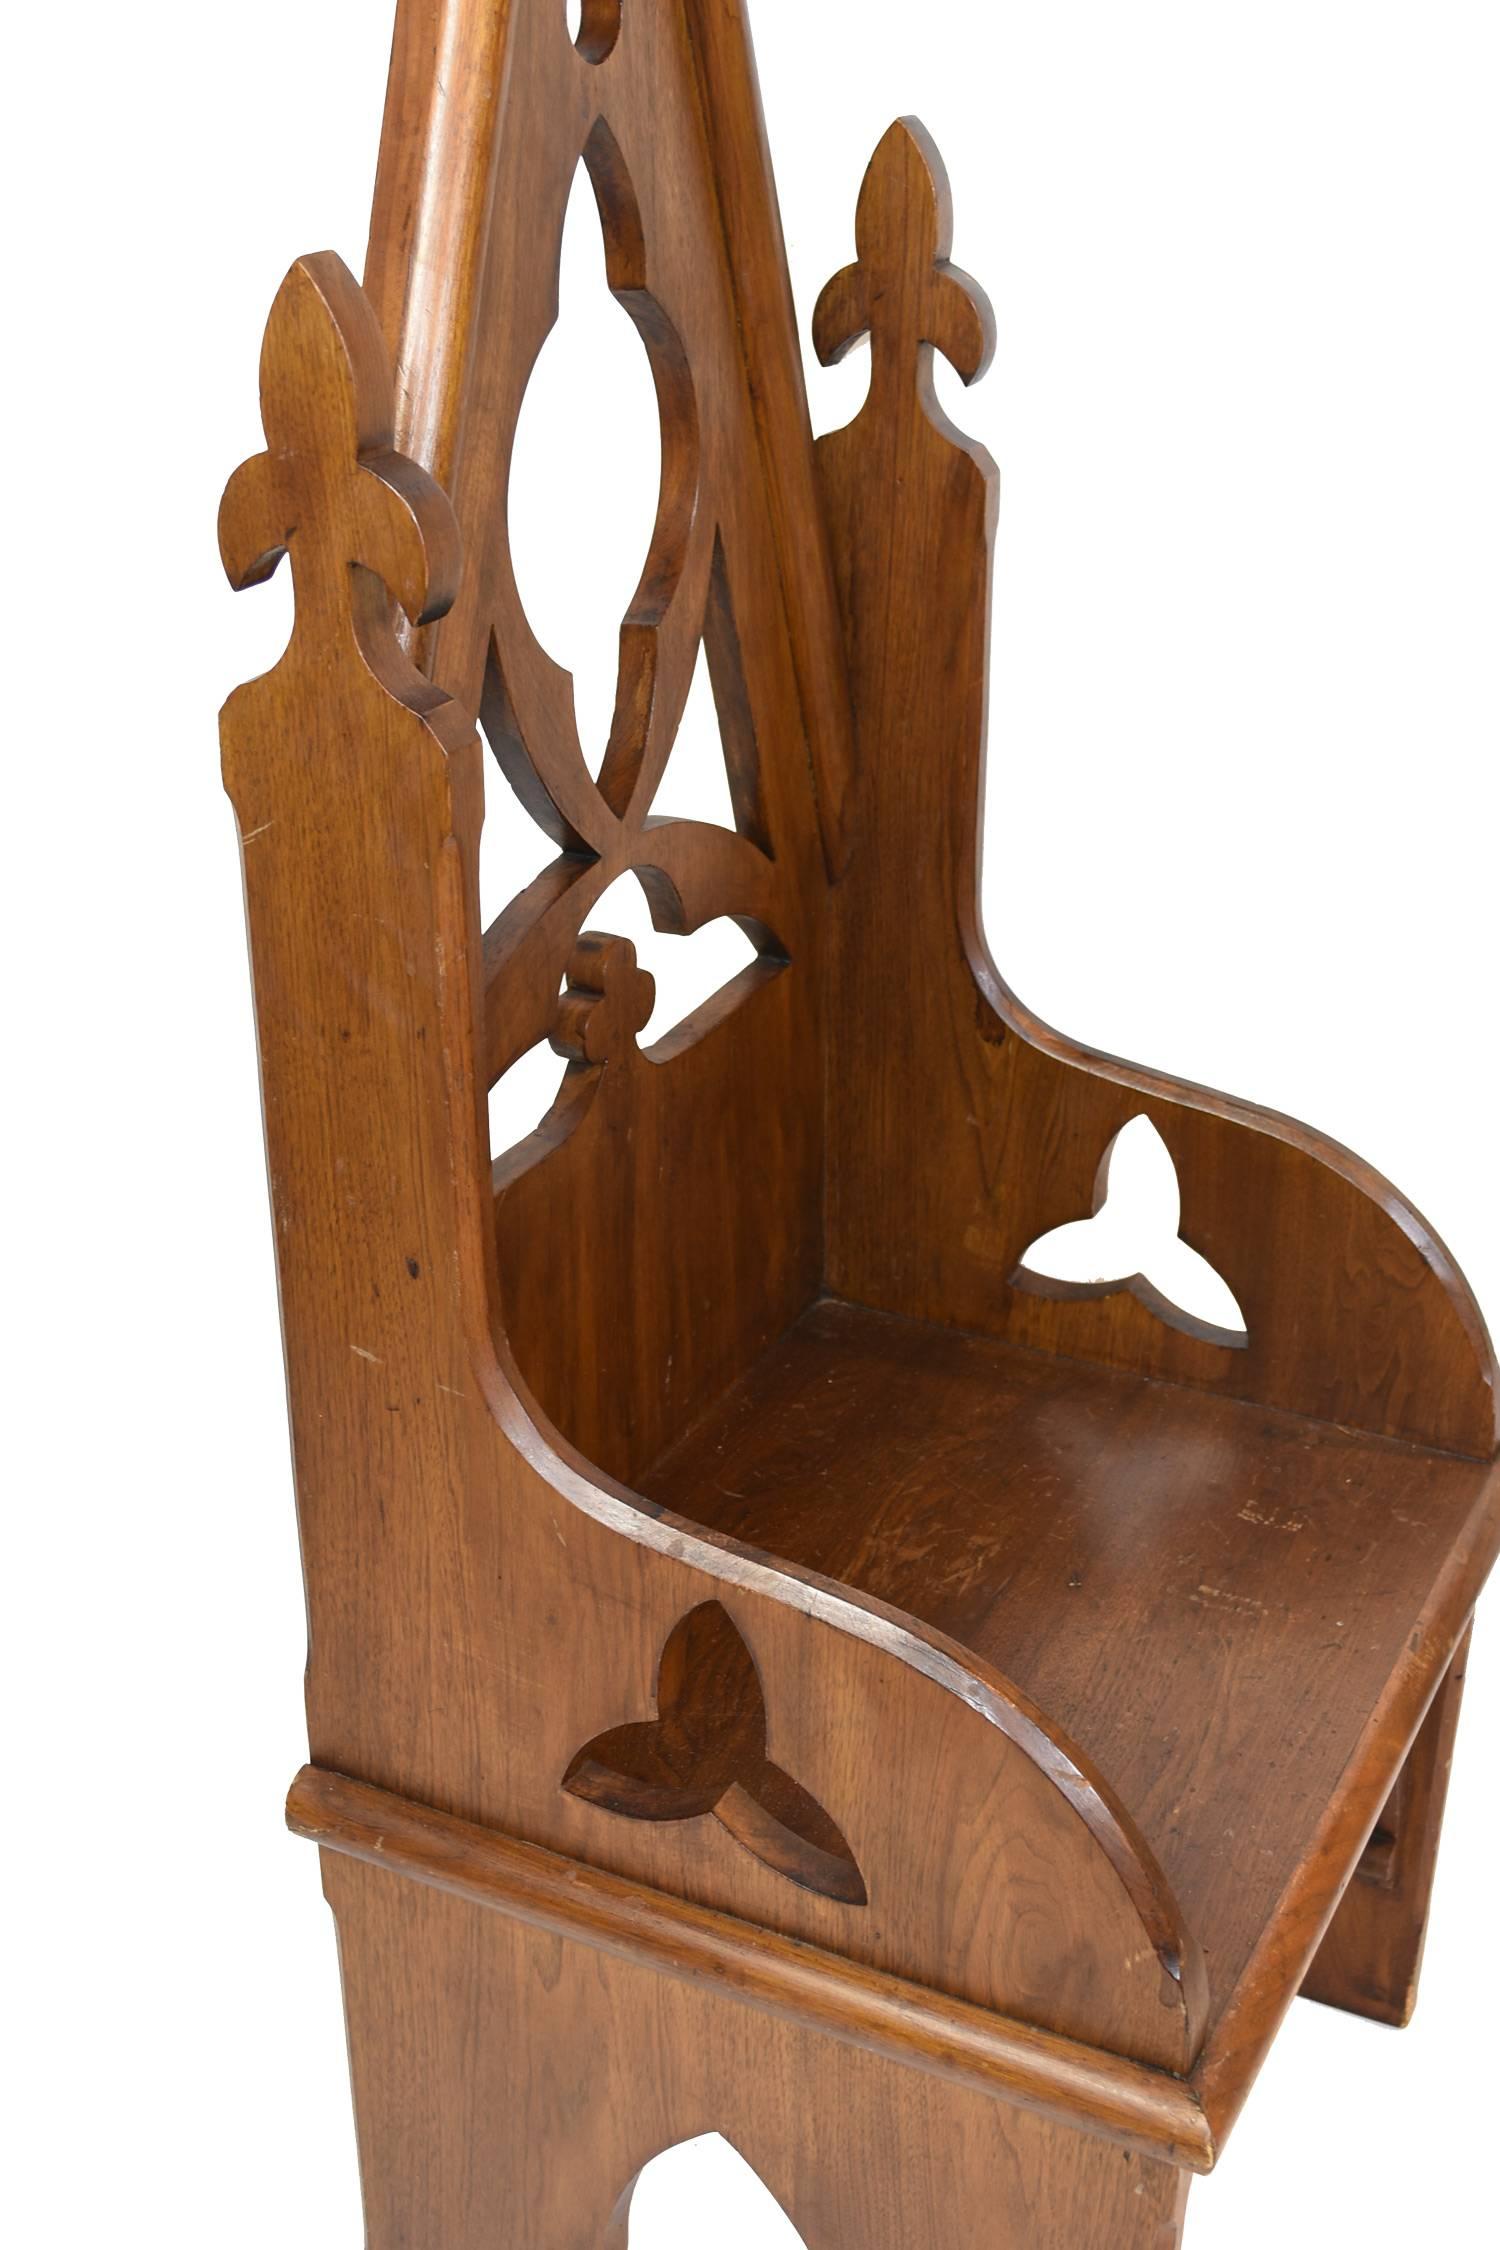 Decorative oak Bishop's chair with vaulted back featuring quatrefoil and trefoil details with fleur-de-lis.